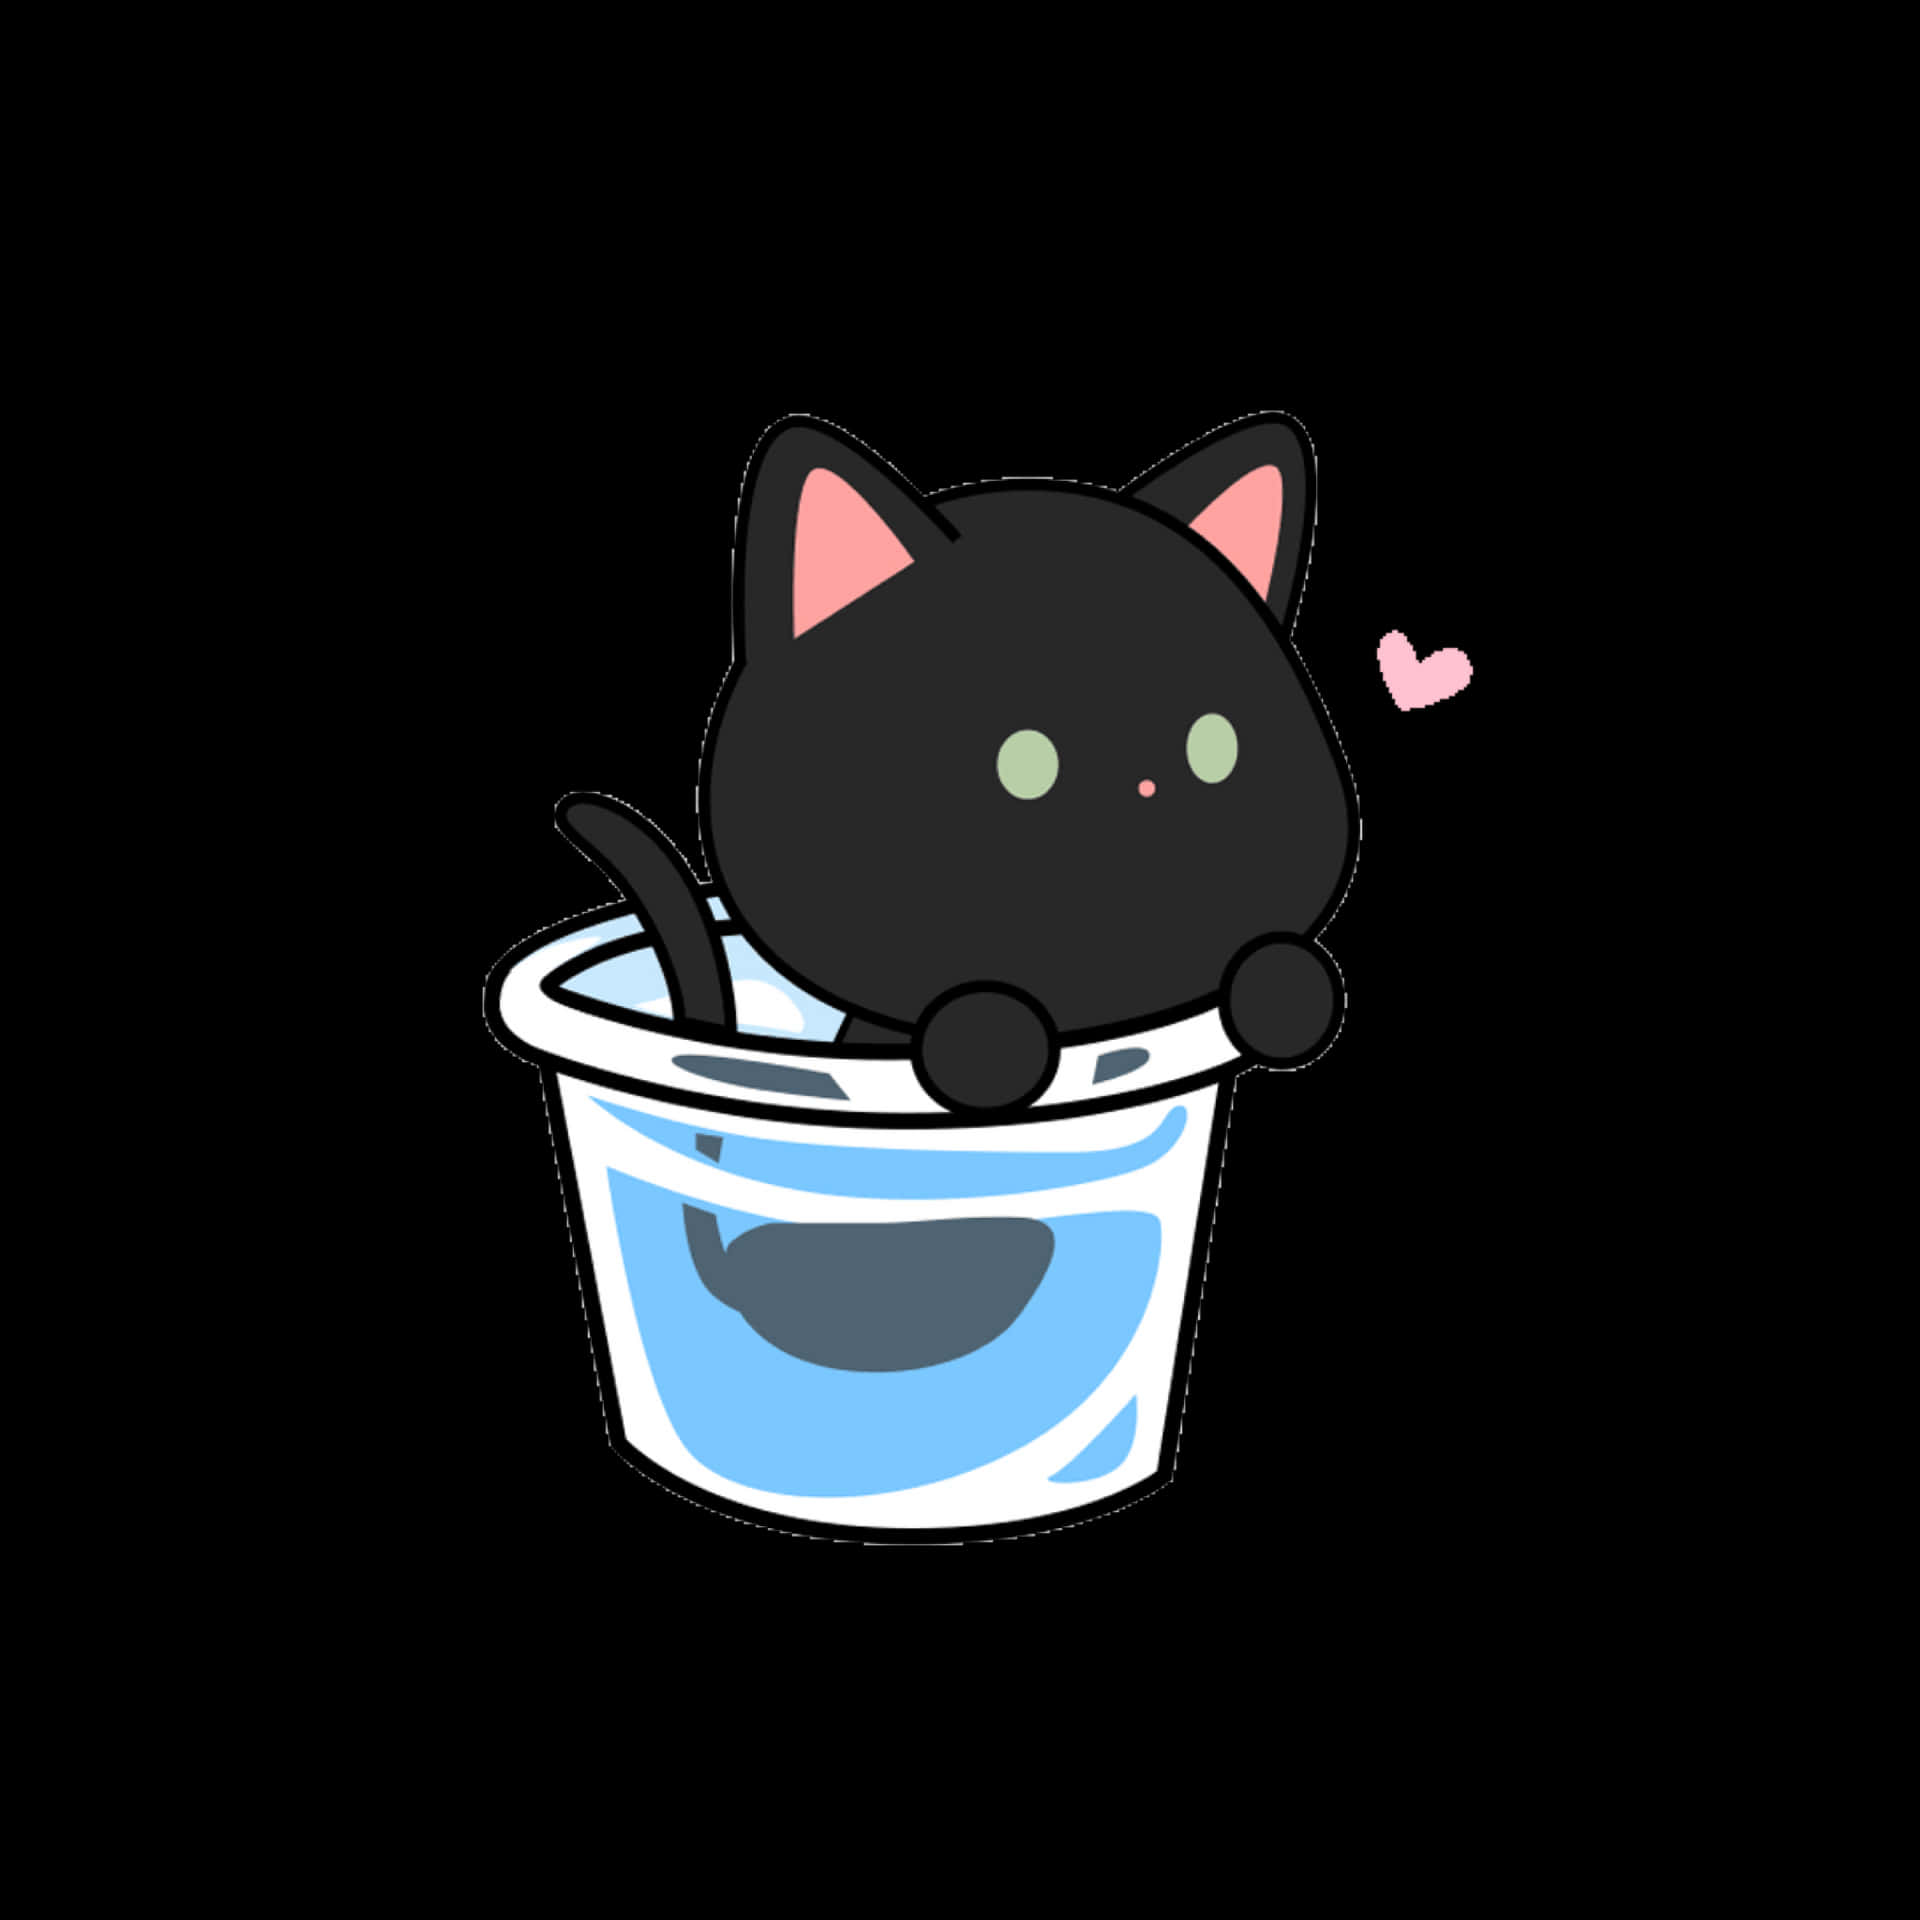 Imagende Arte De Un Lindo Gato Negro En La Bañera